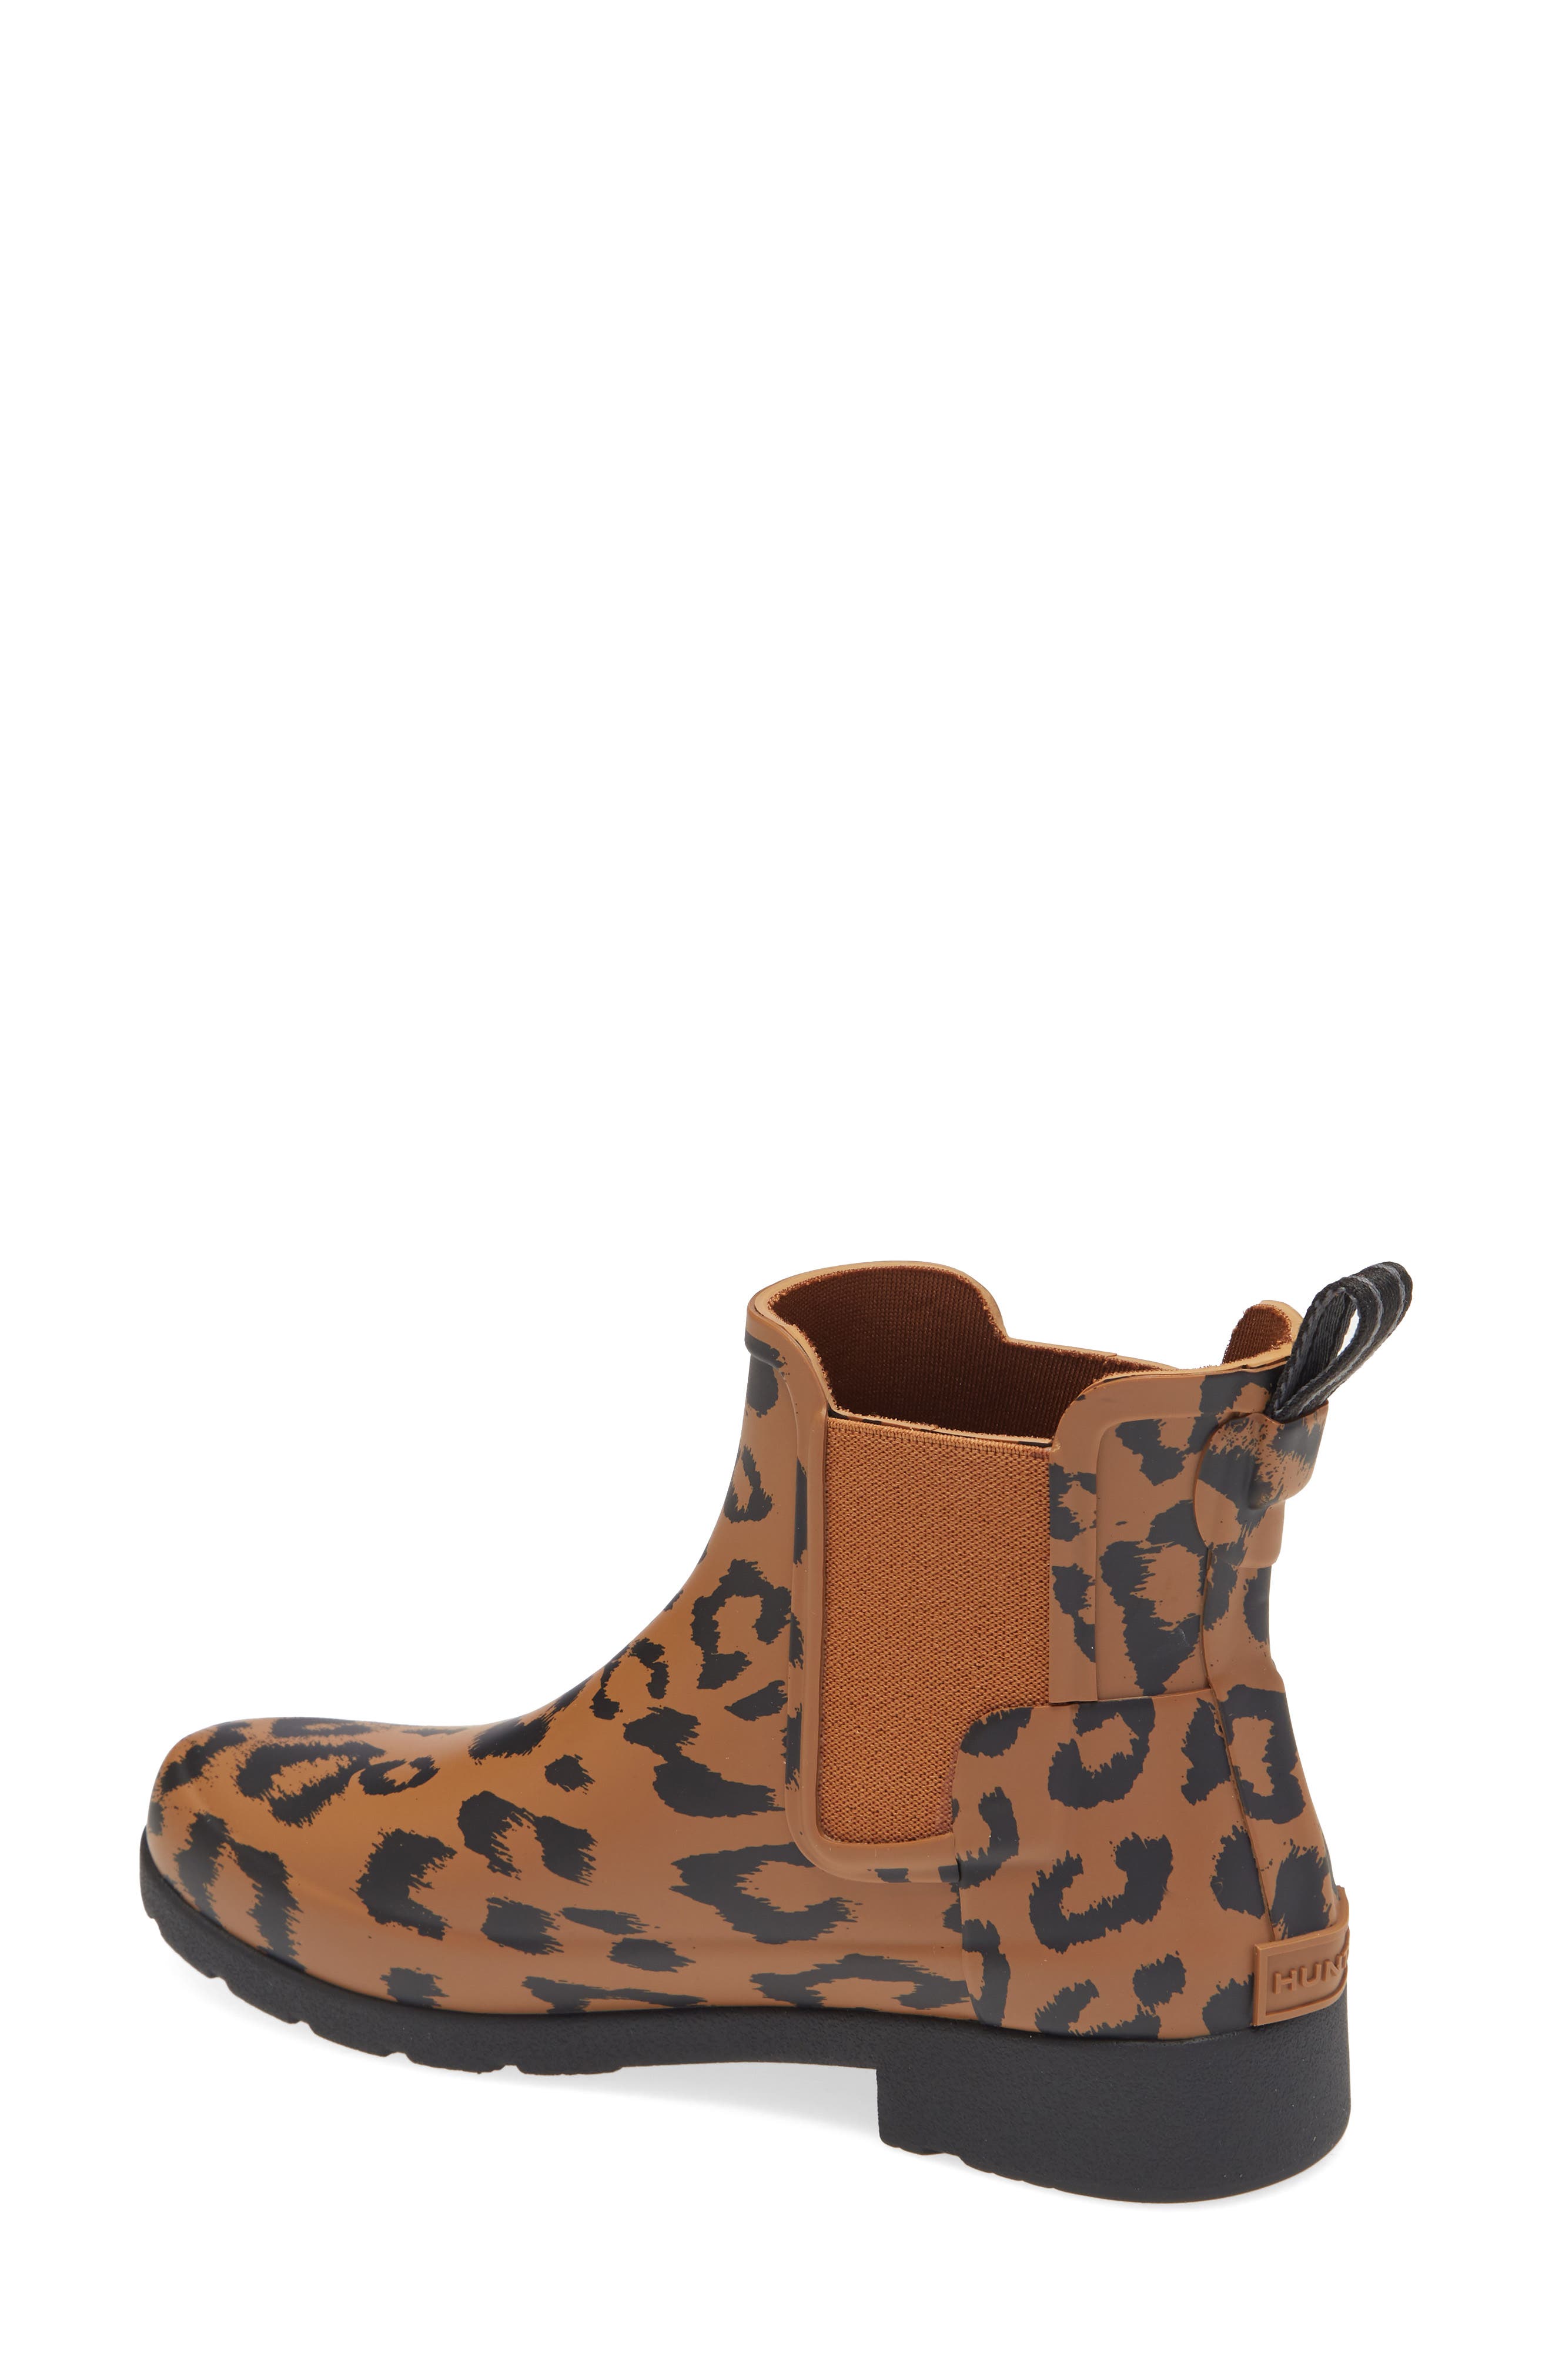 hunter cheetah rain boots